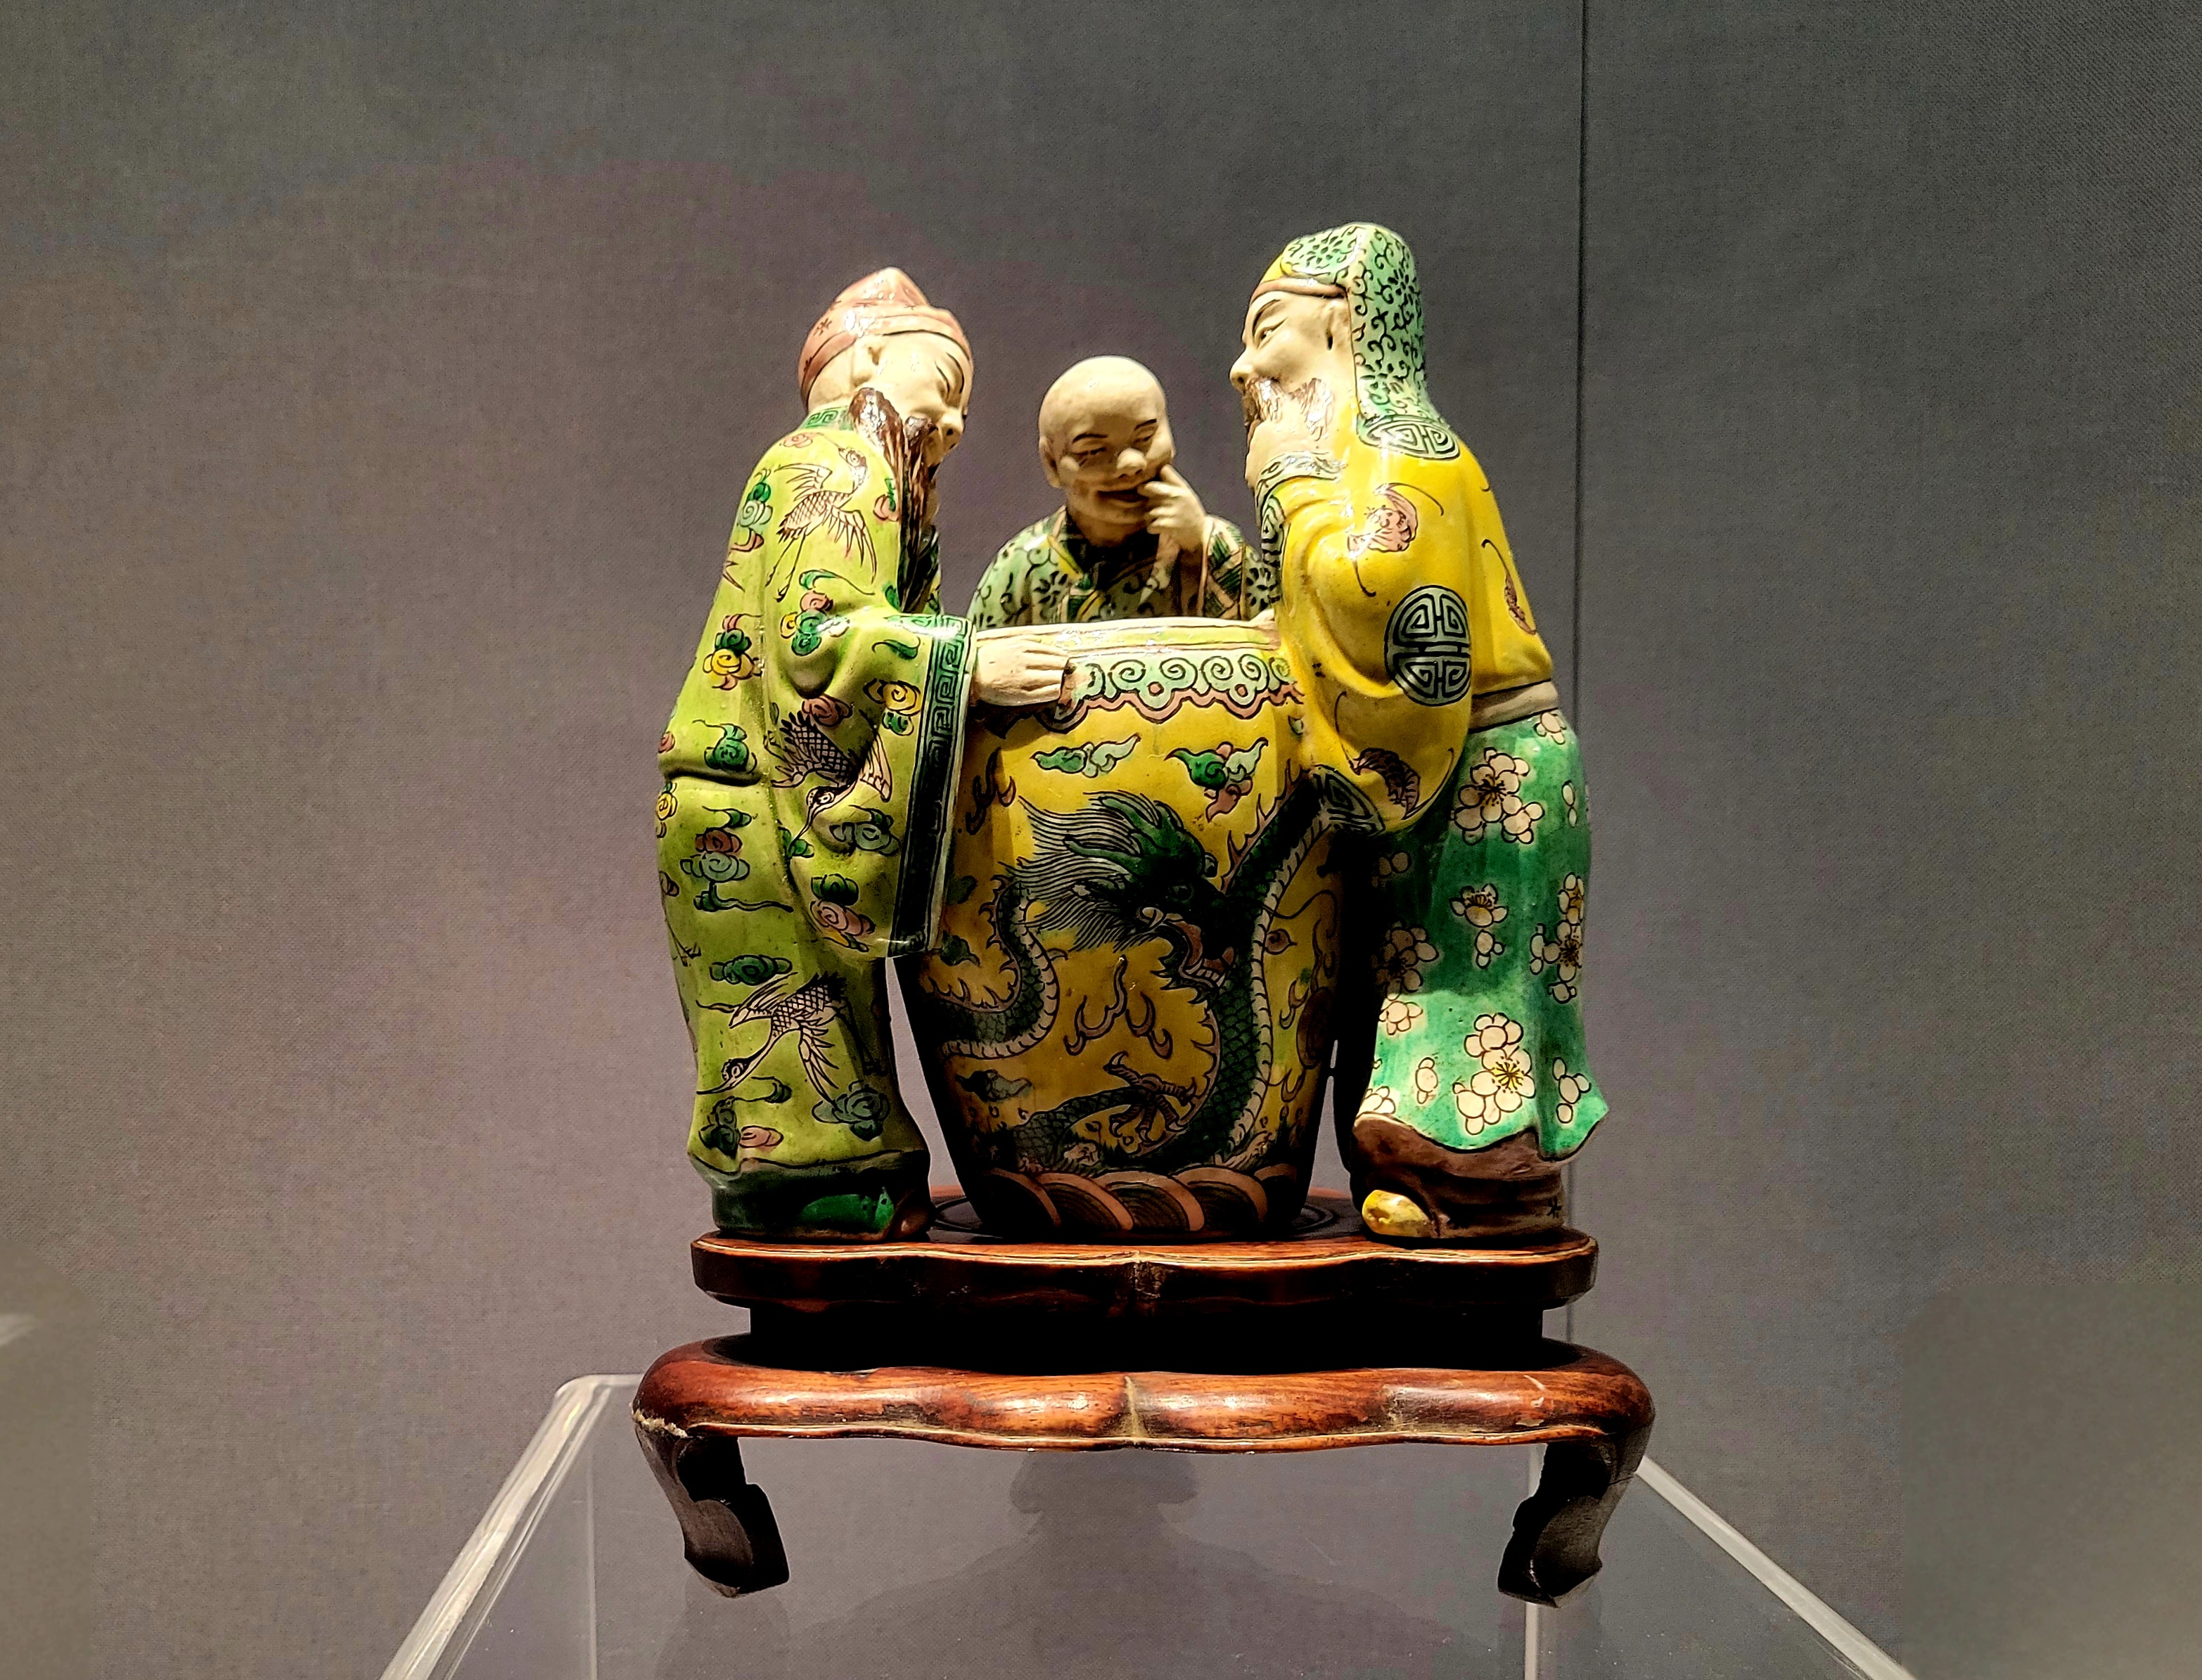 Στην φωτογραφία, τρίχρωμο κεραμικό αντικείμενο από την έκθεση του Μουσείου Τσιφένγκ (赤峰博物馆: chìfēng bówùguǎn)  (Φωτογραφία Εύα Παπαζή/CRI Greek)